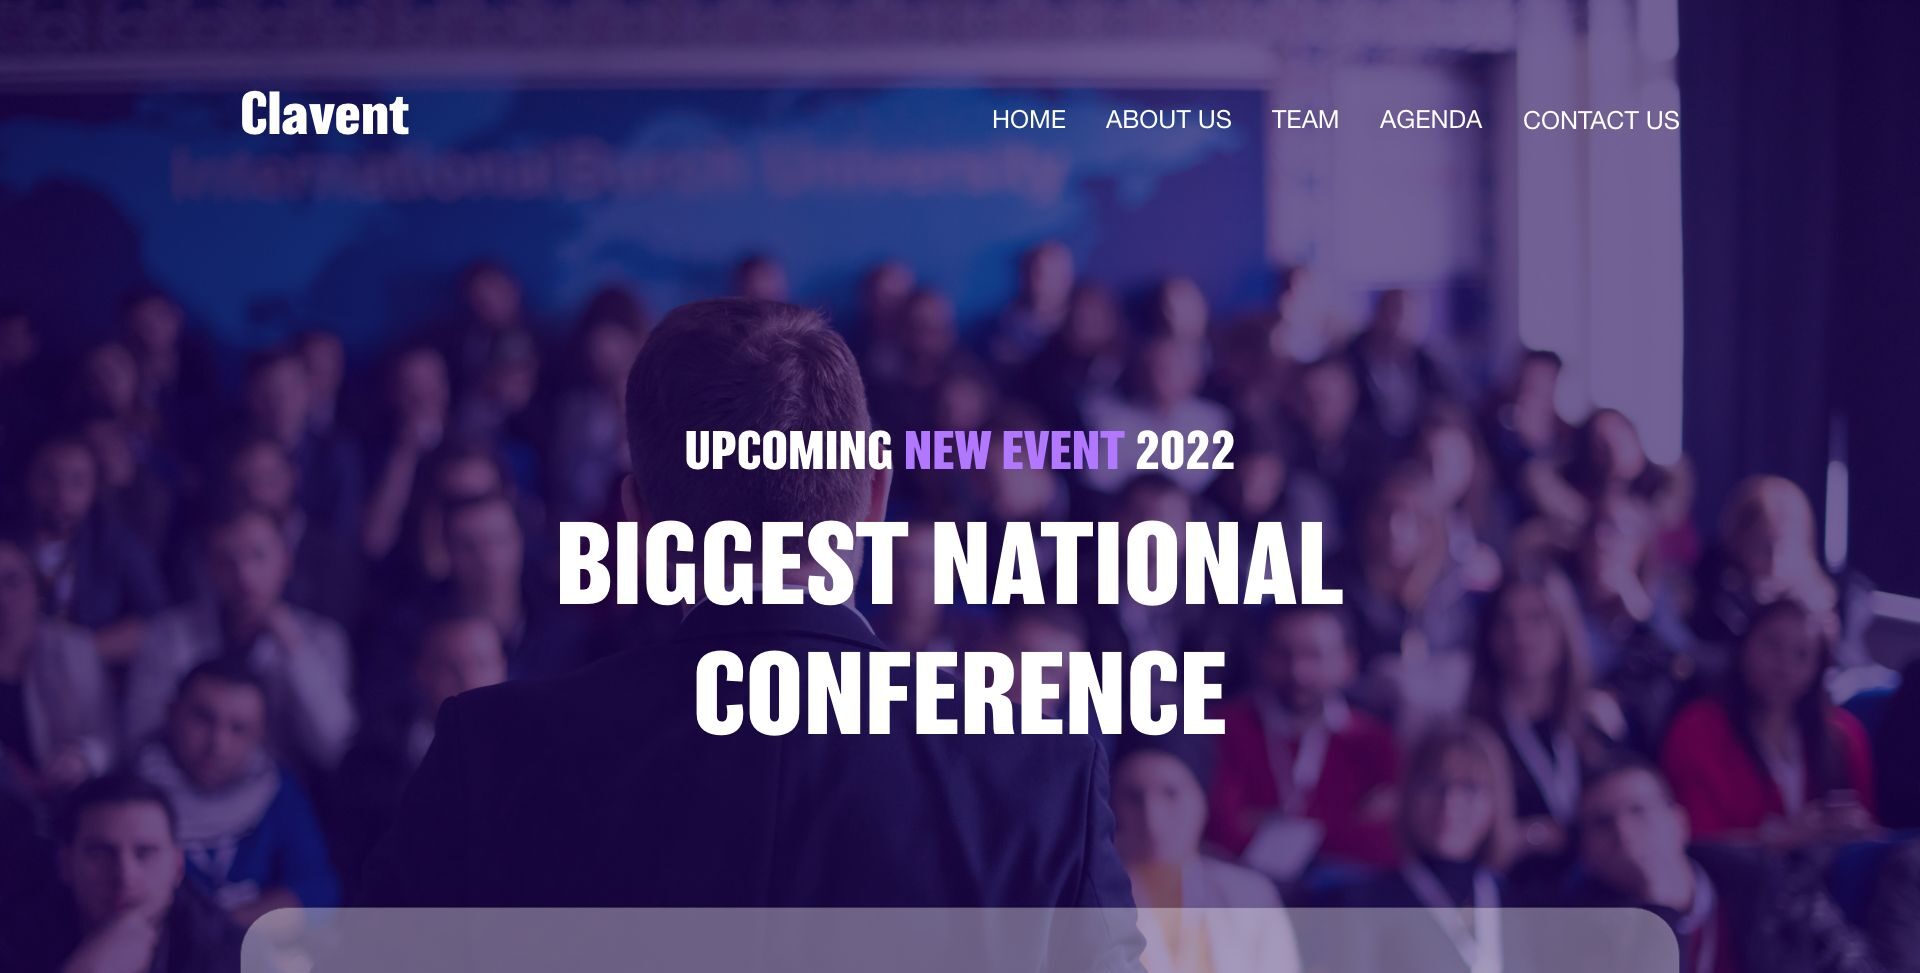 Biggest Conference Website Conference